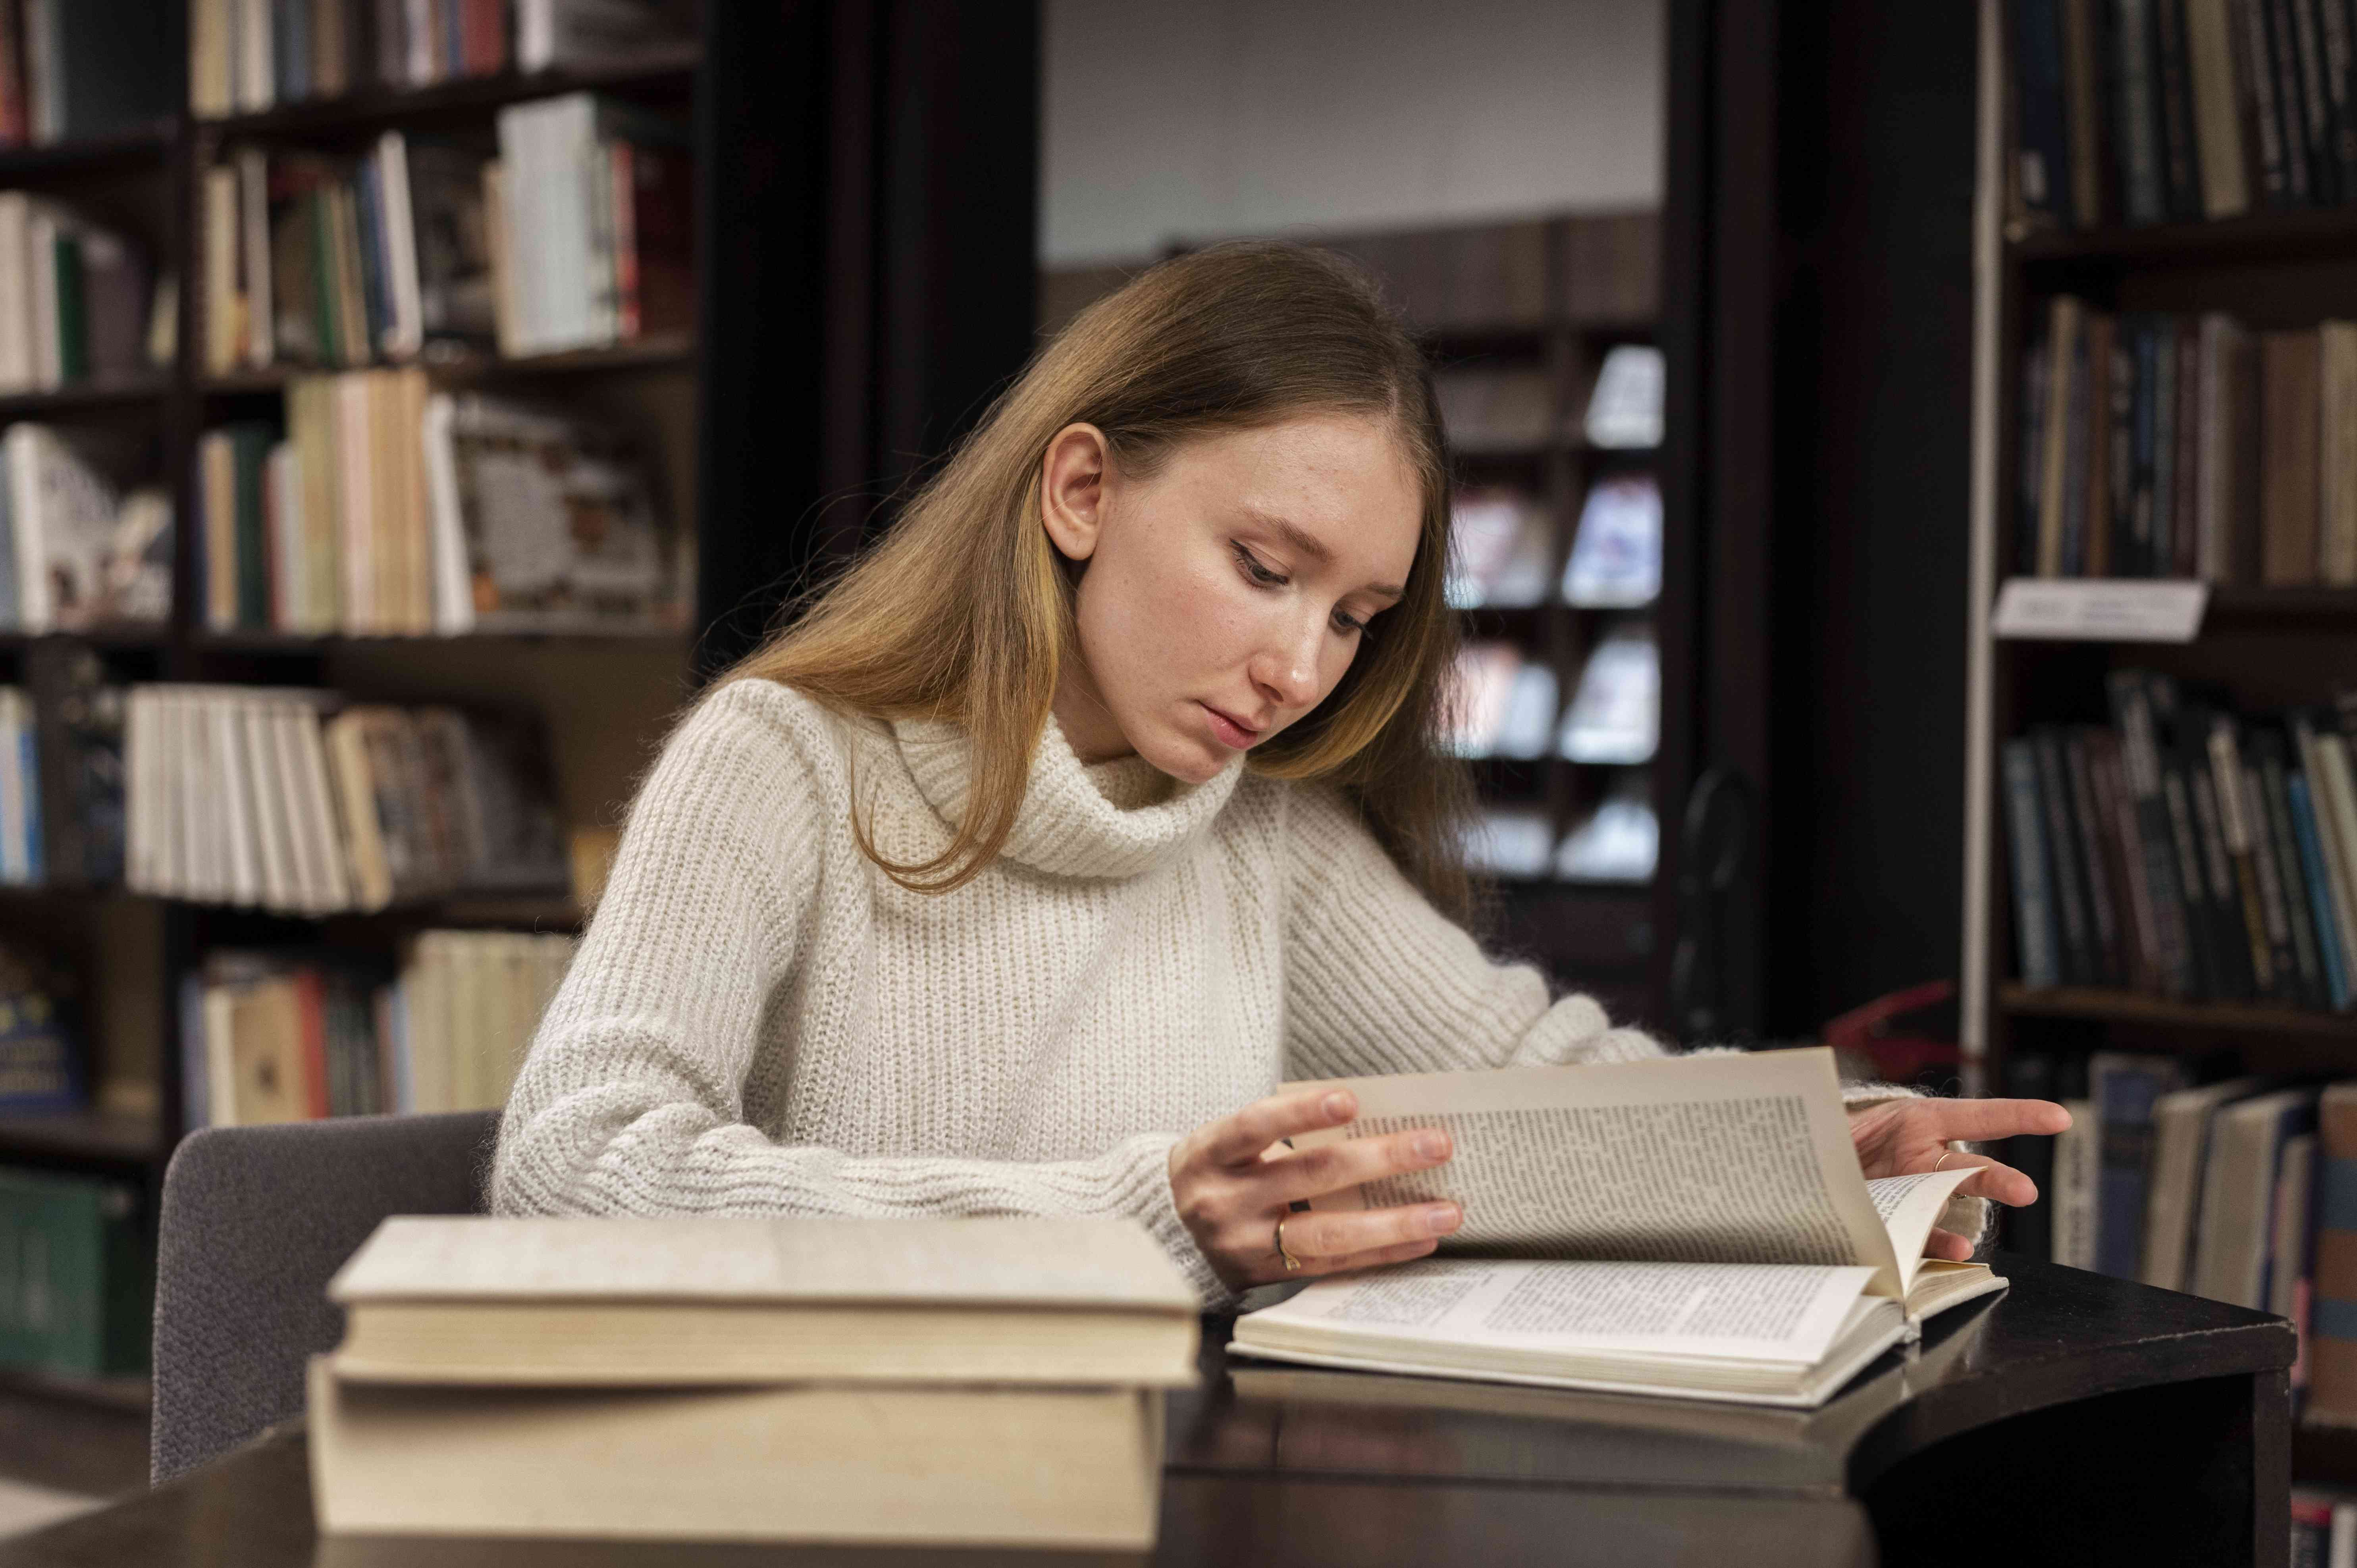 Foto einer Studentin in einer ehrwürdigen Bibliothek am Schreibtisch liest konzentriert in einem der Bücher vor ihr.